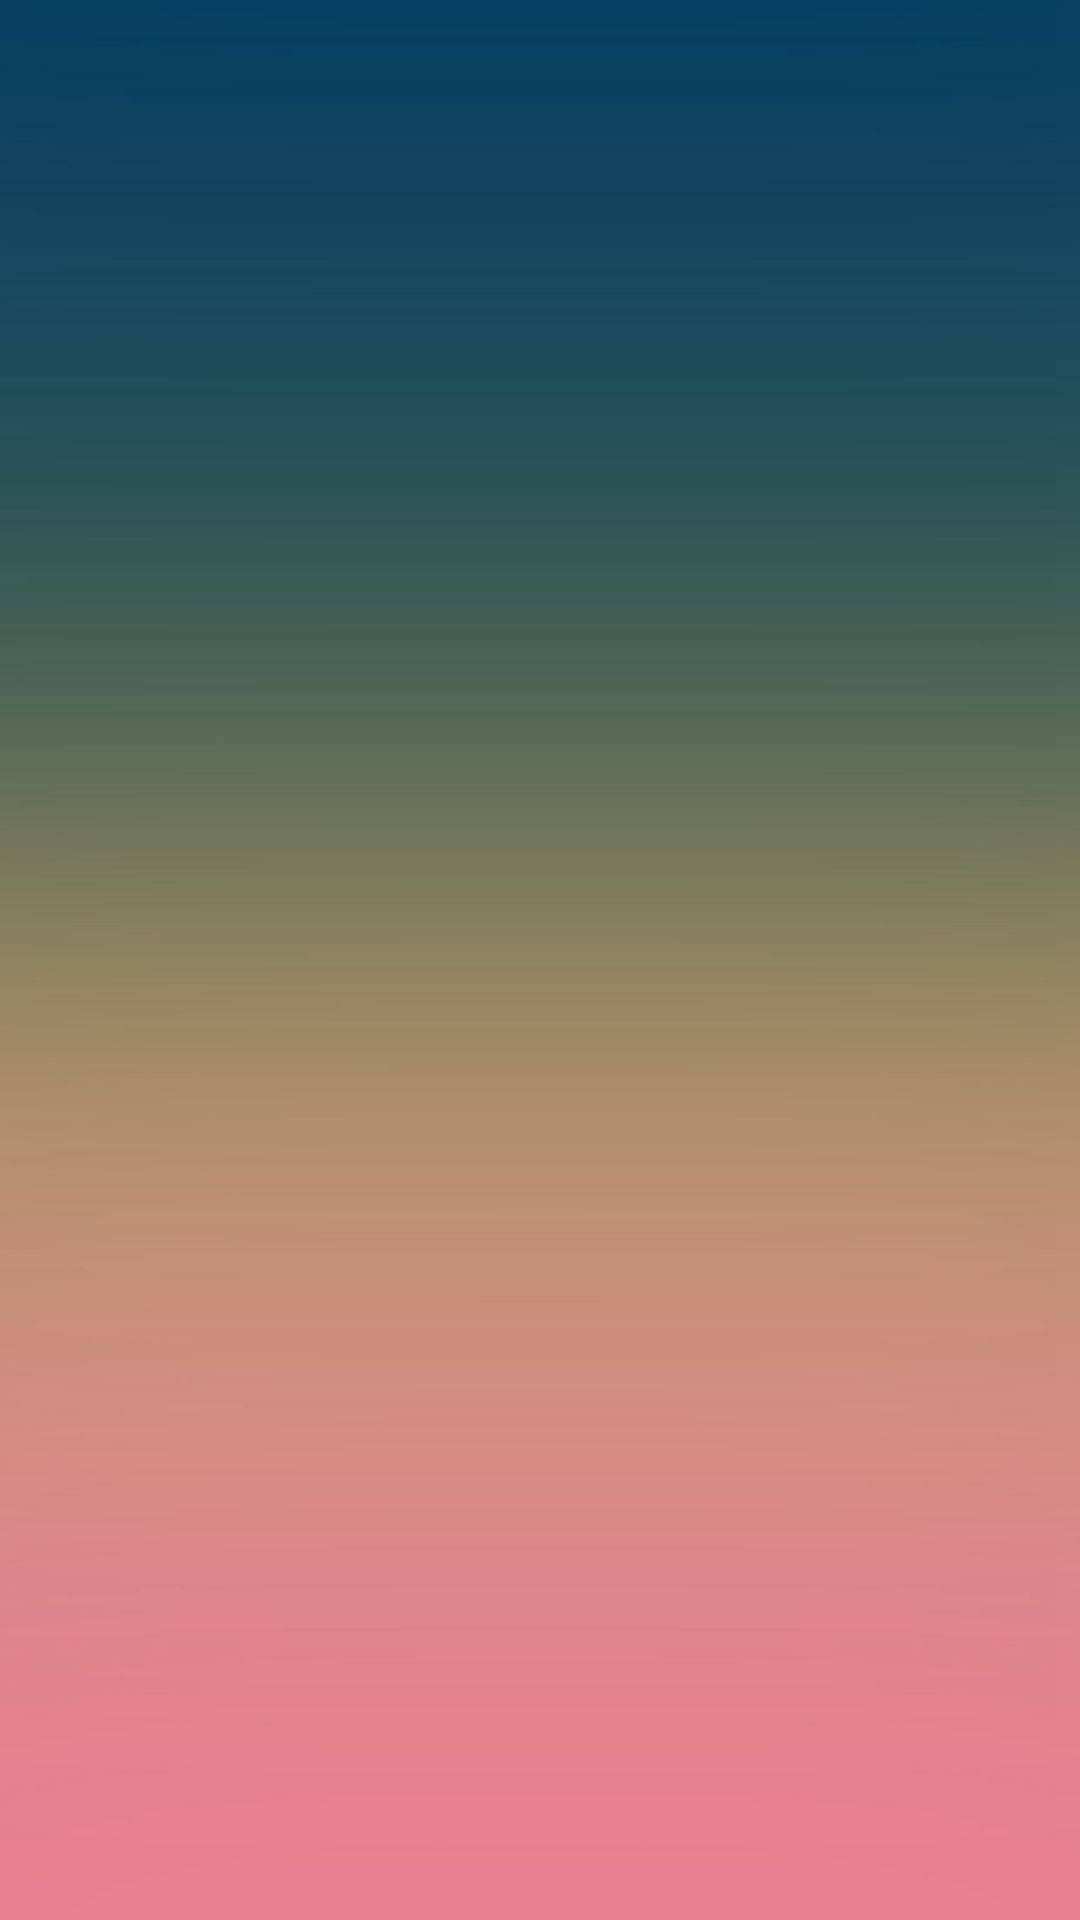  Farbverlauf Pastell Hintergrundbild 1080x1920. Farbe IPhone Wallpaper KOSTENLOS